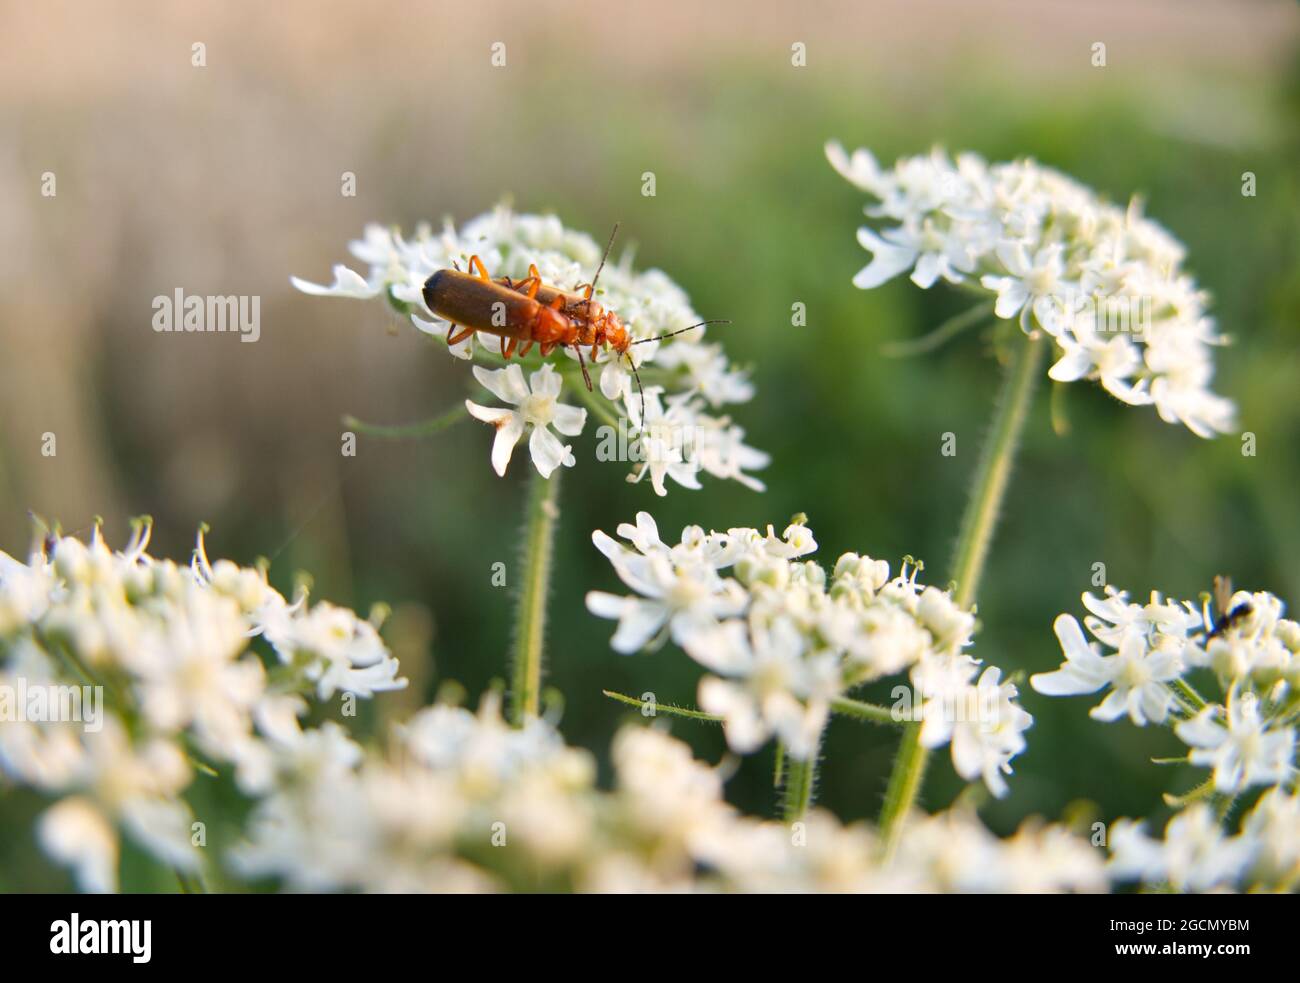 Deux coléoptères rouges communs (Rhagonycha fulva) qui se pongent sur les fleurs blanches de Hogweed (Heracleum sphondylium), également connu sous le nom de Cow Parsnip Banque D'Images